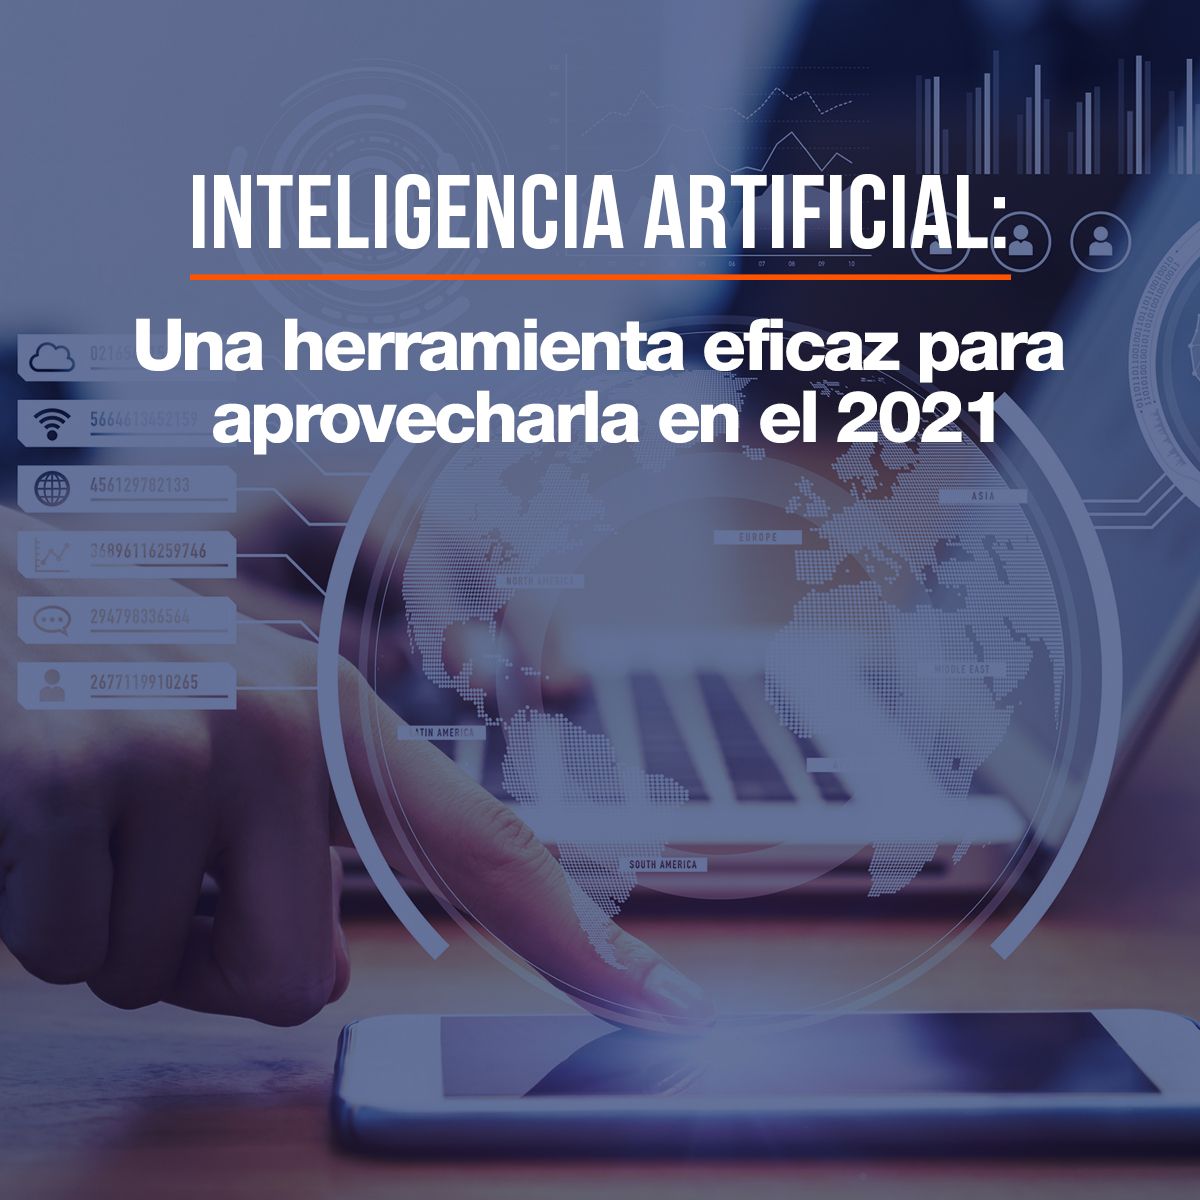 Inteligencia Artificial: Una herramienta eficaz para aprovecharla en el 2021